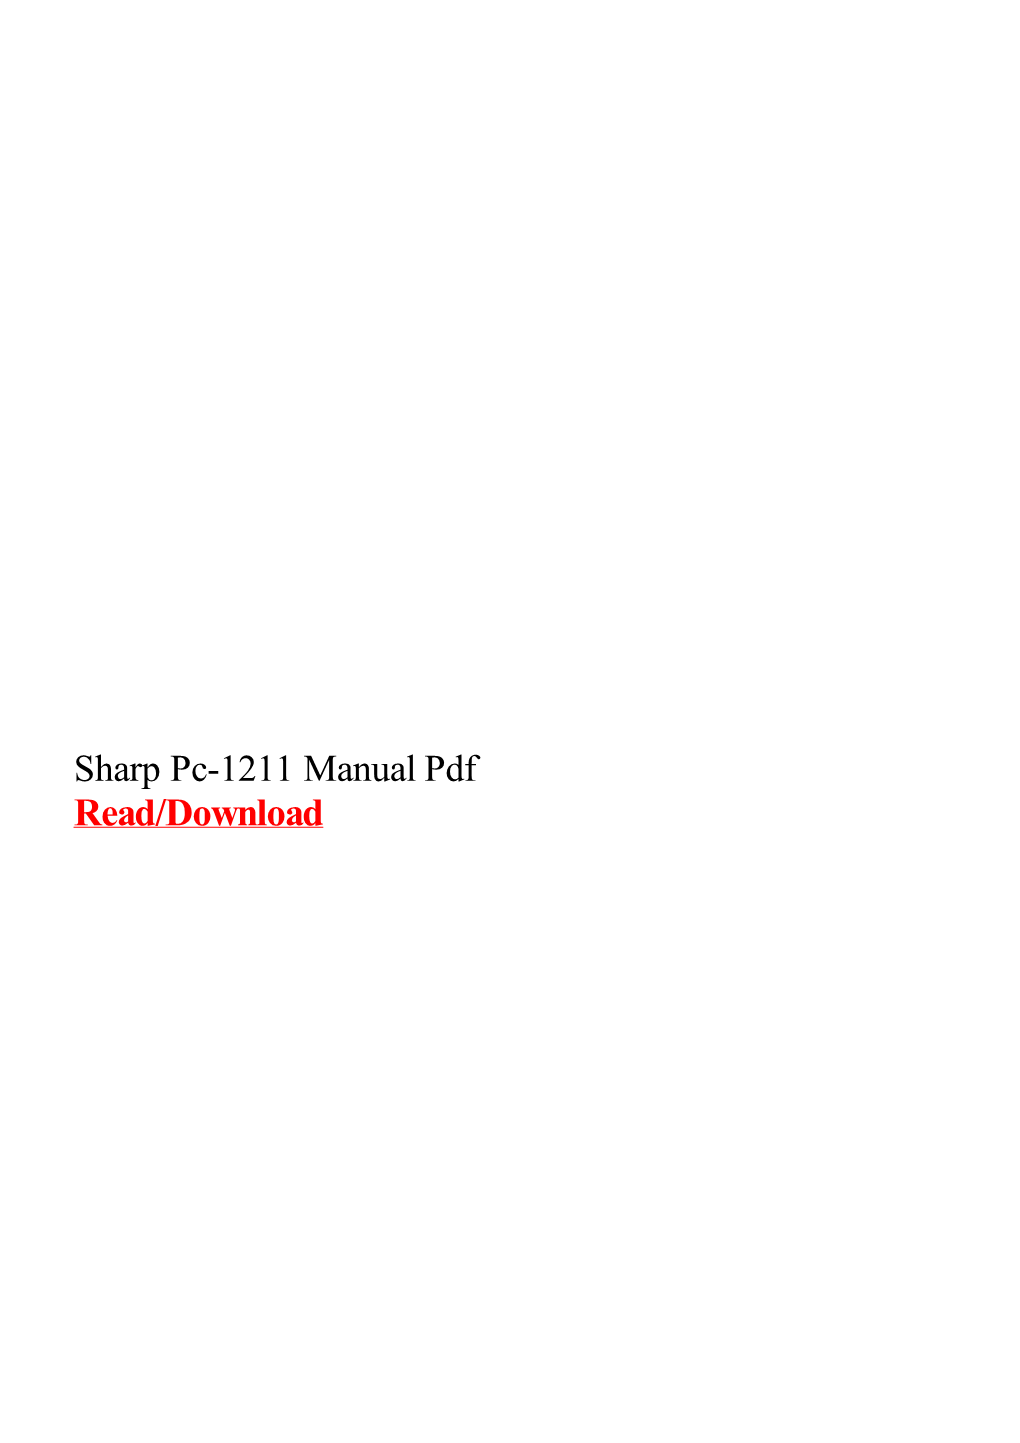 Sharp Pc-1211 Manual Pdf.Pdf